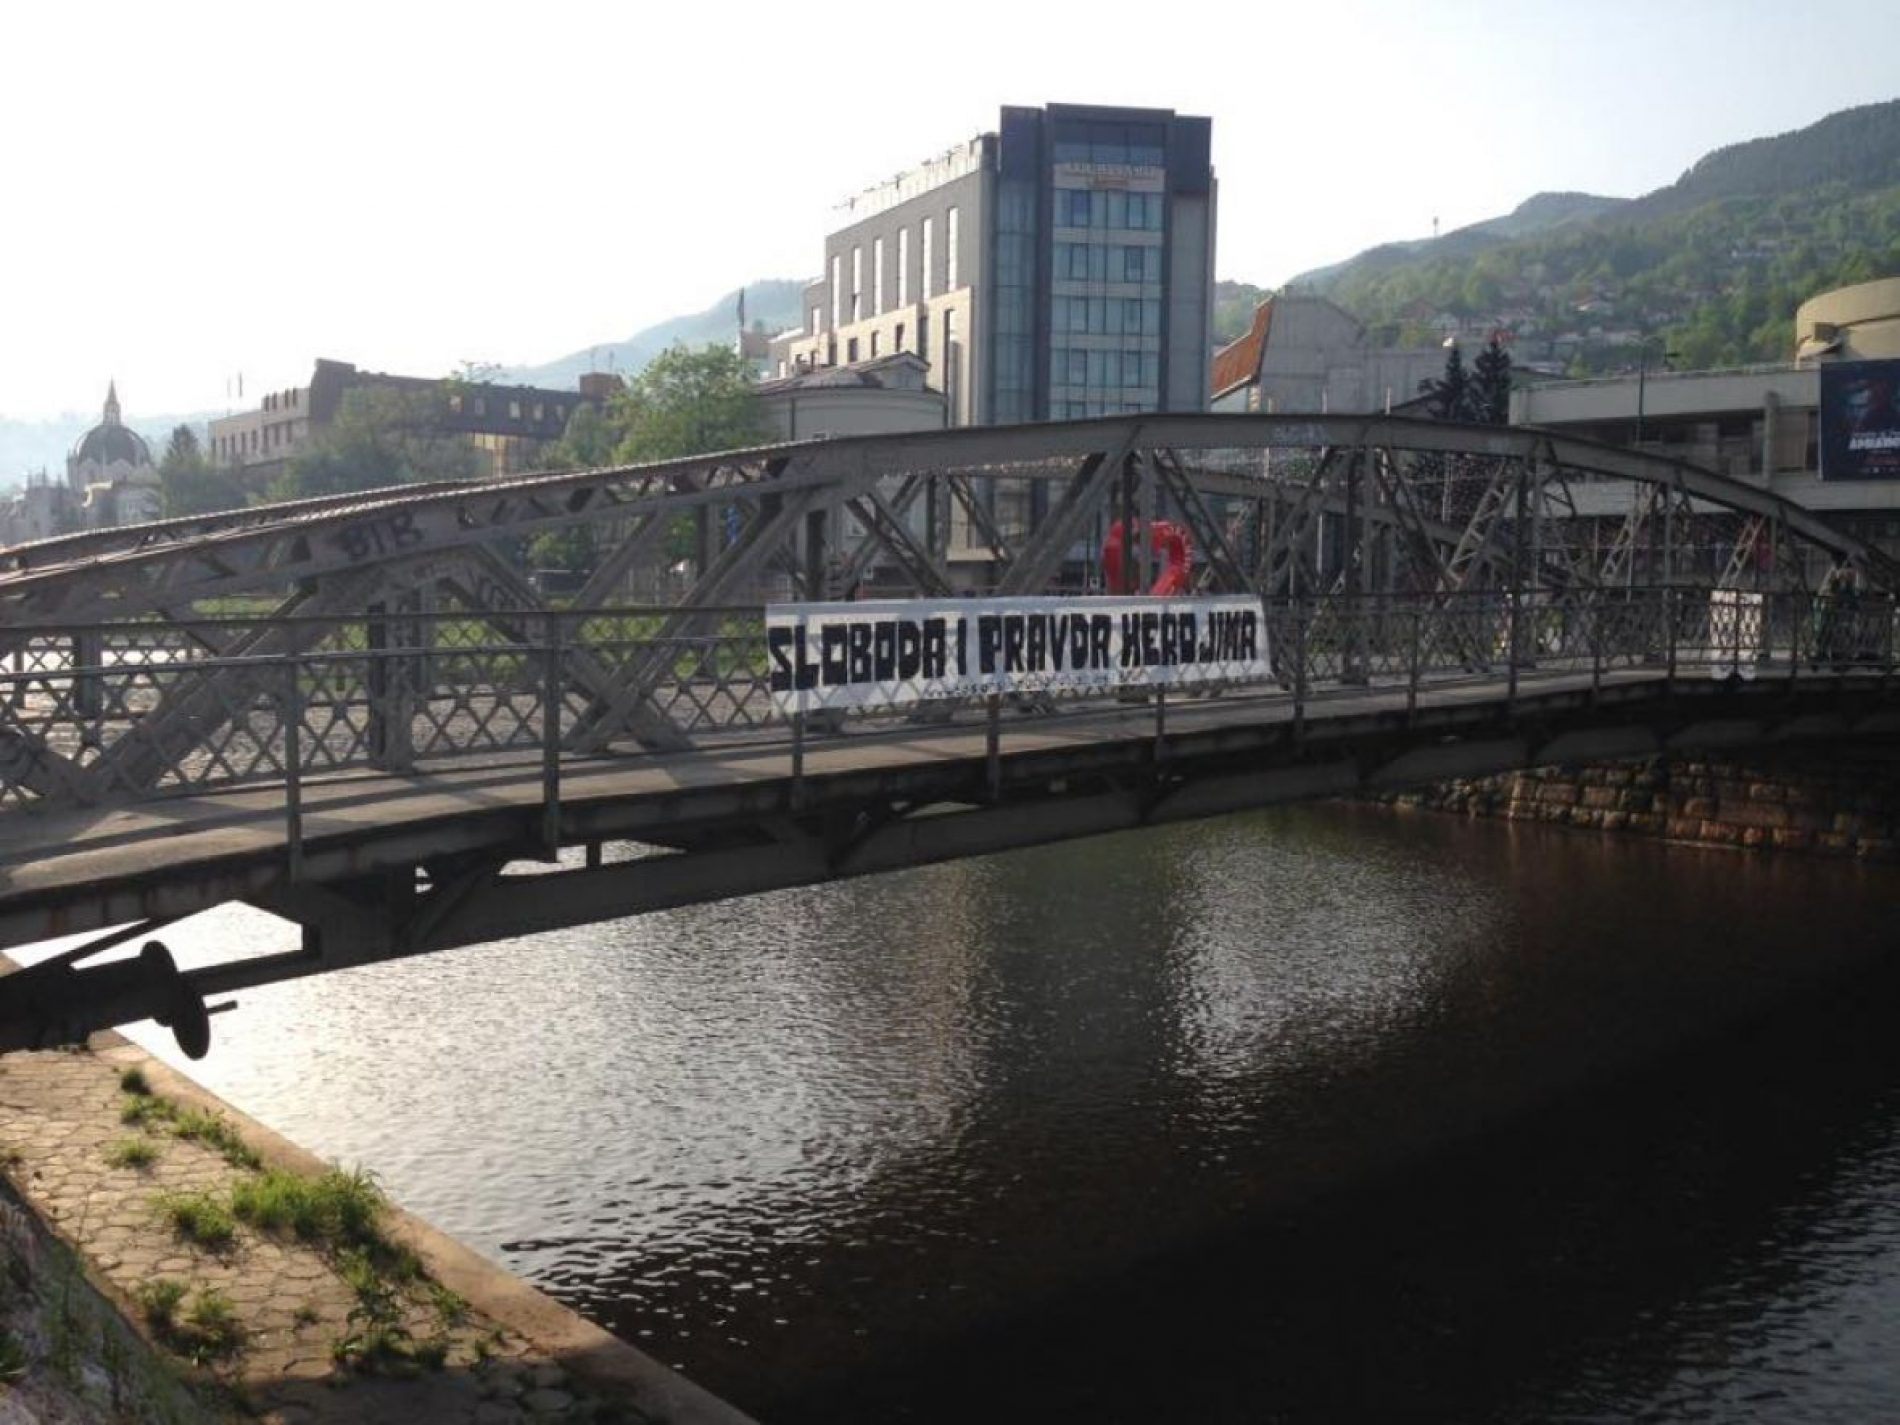 Eiffelov most u Sarajevu: “Sloboda i pravda herojima”